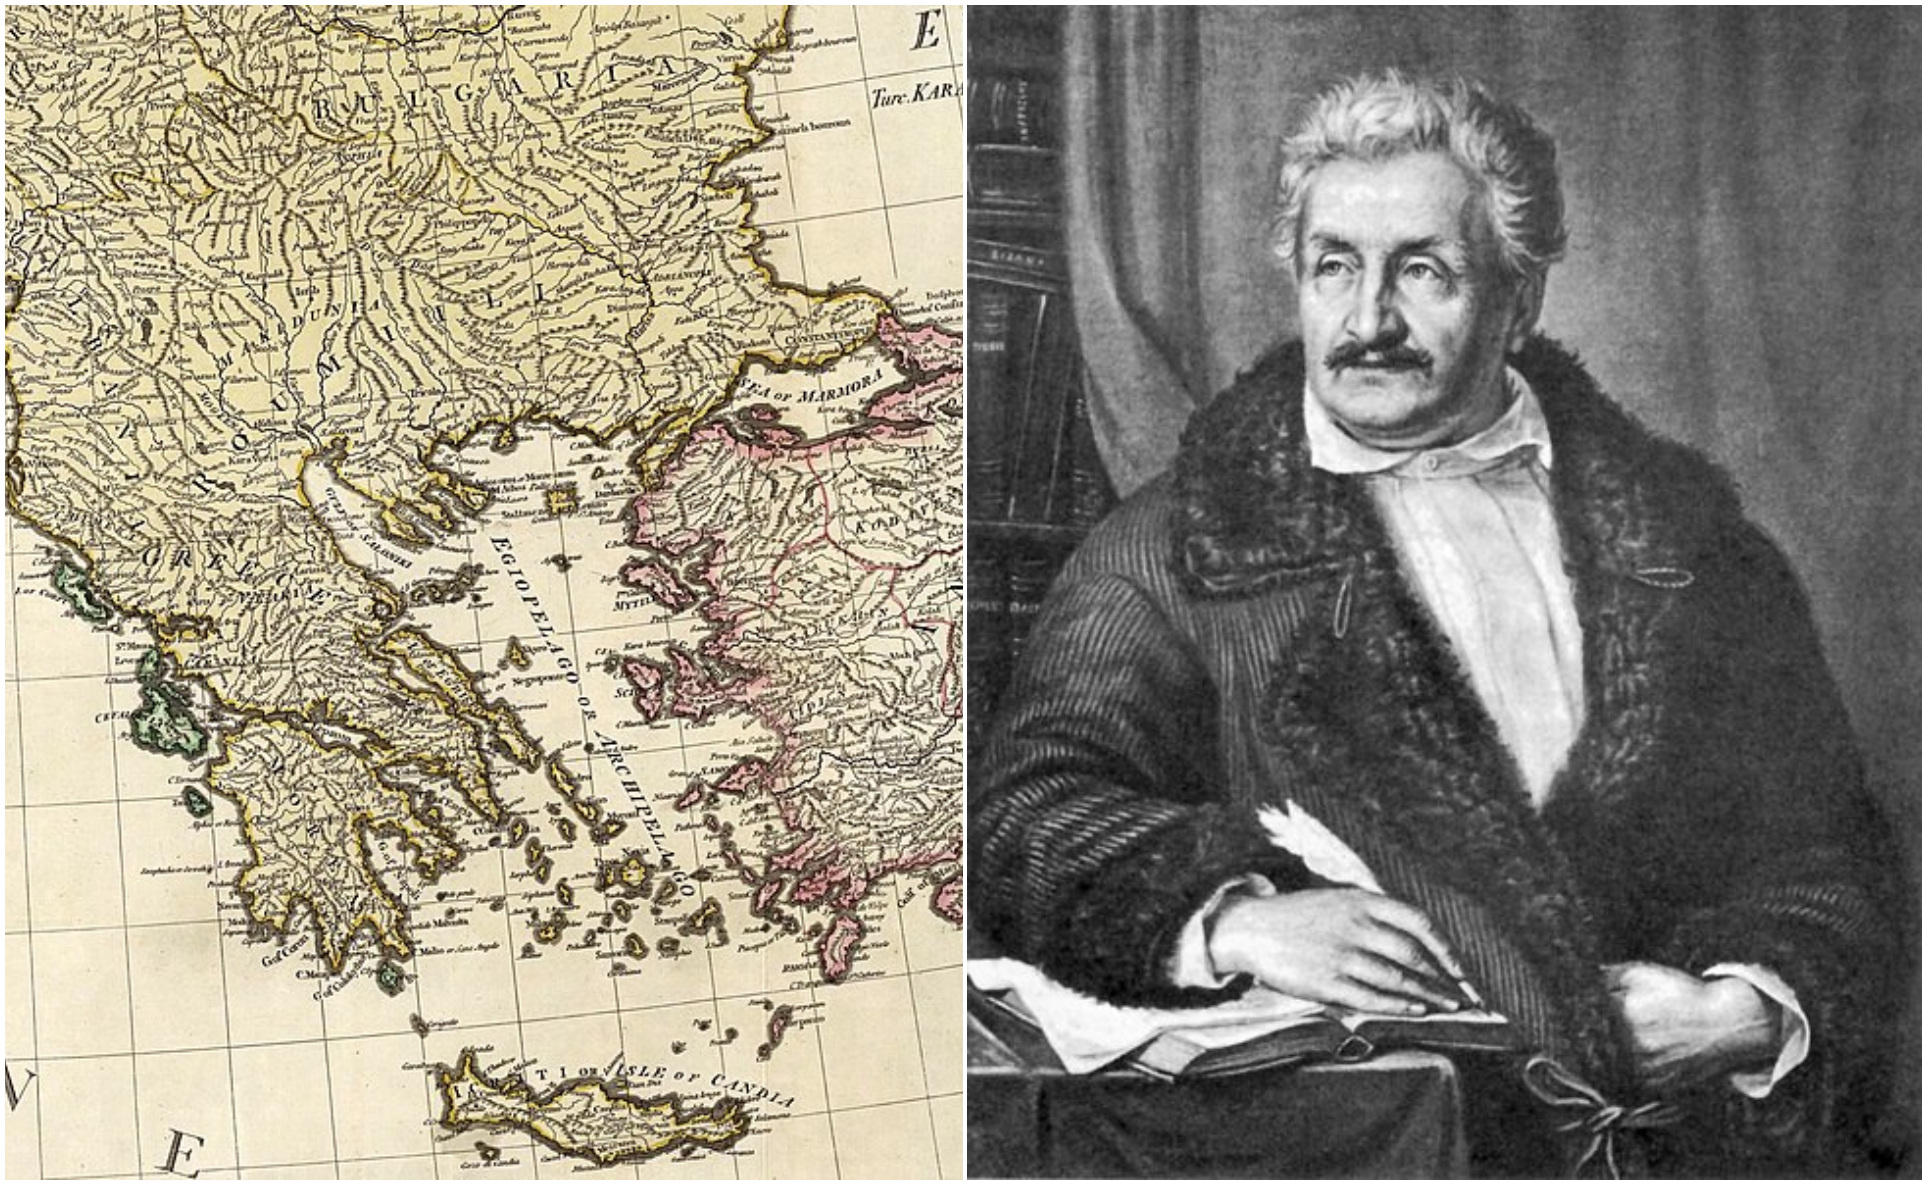 Φαλμεράιερ. Ο Αυστριακός που υποστήριξε ότι οι Νεοέλληνες ήταν απόγονοι Σλάβων και Αλβανών! Η απάντηση ιστορικών και γενετιστών